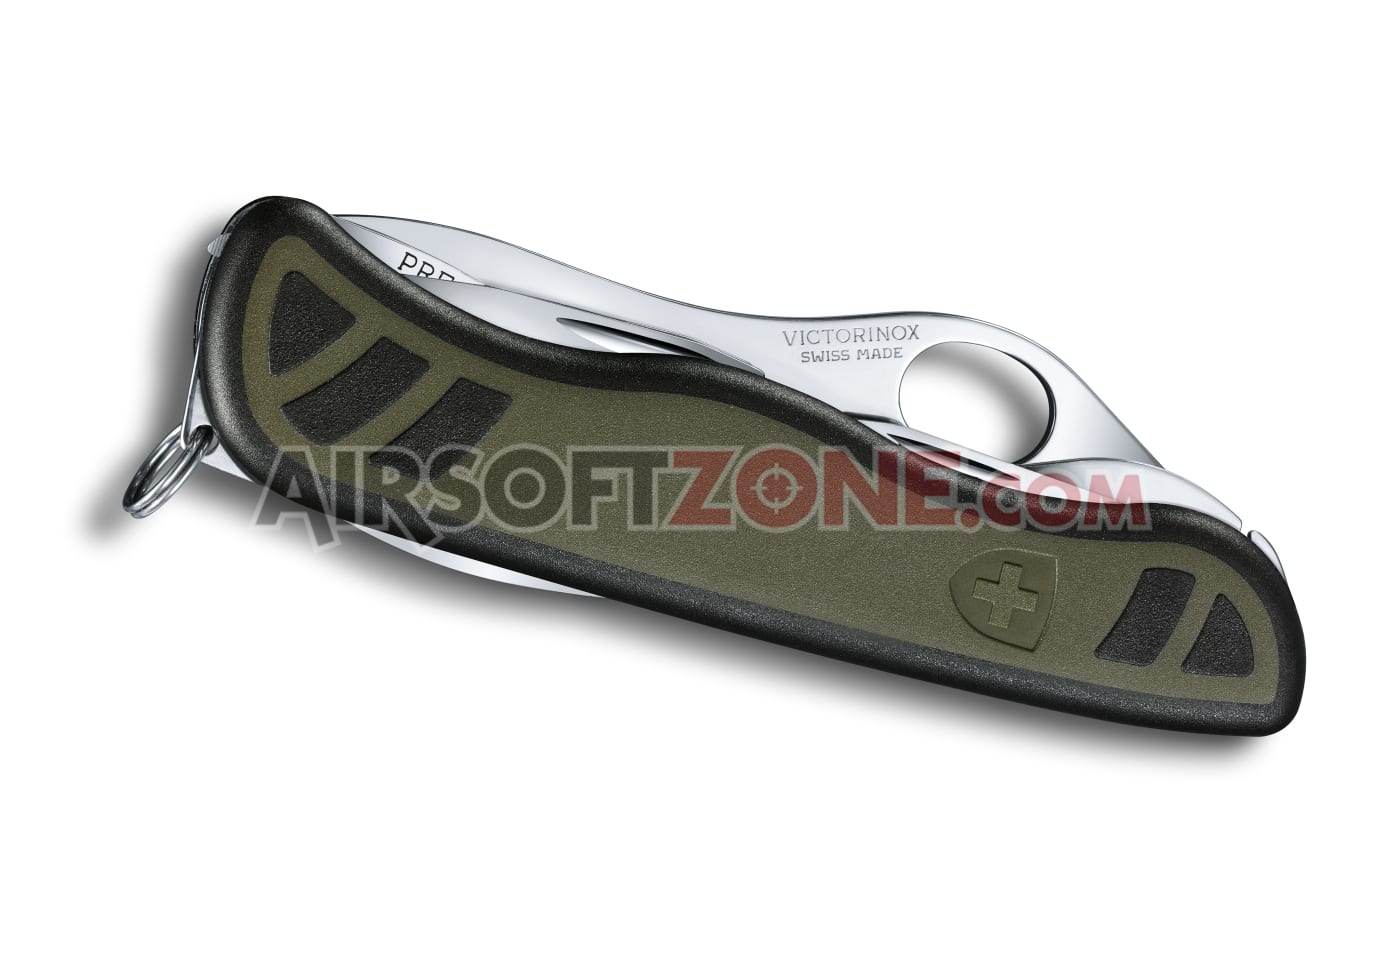 Soldatenmesser 08 Airsoftzone (2024) - Victorinox